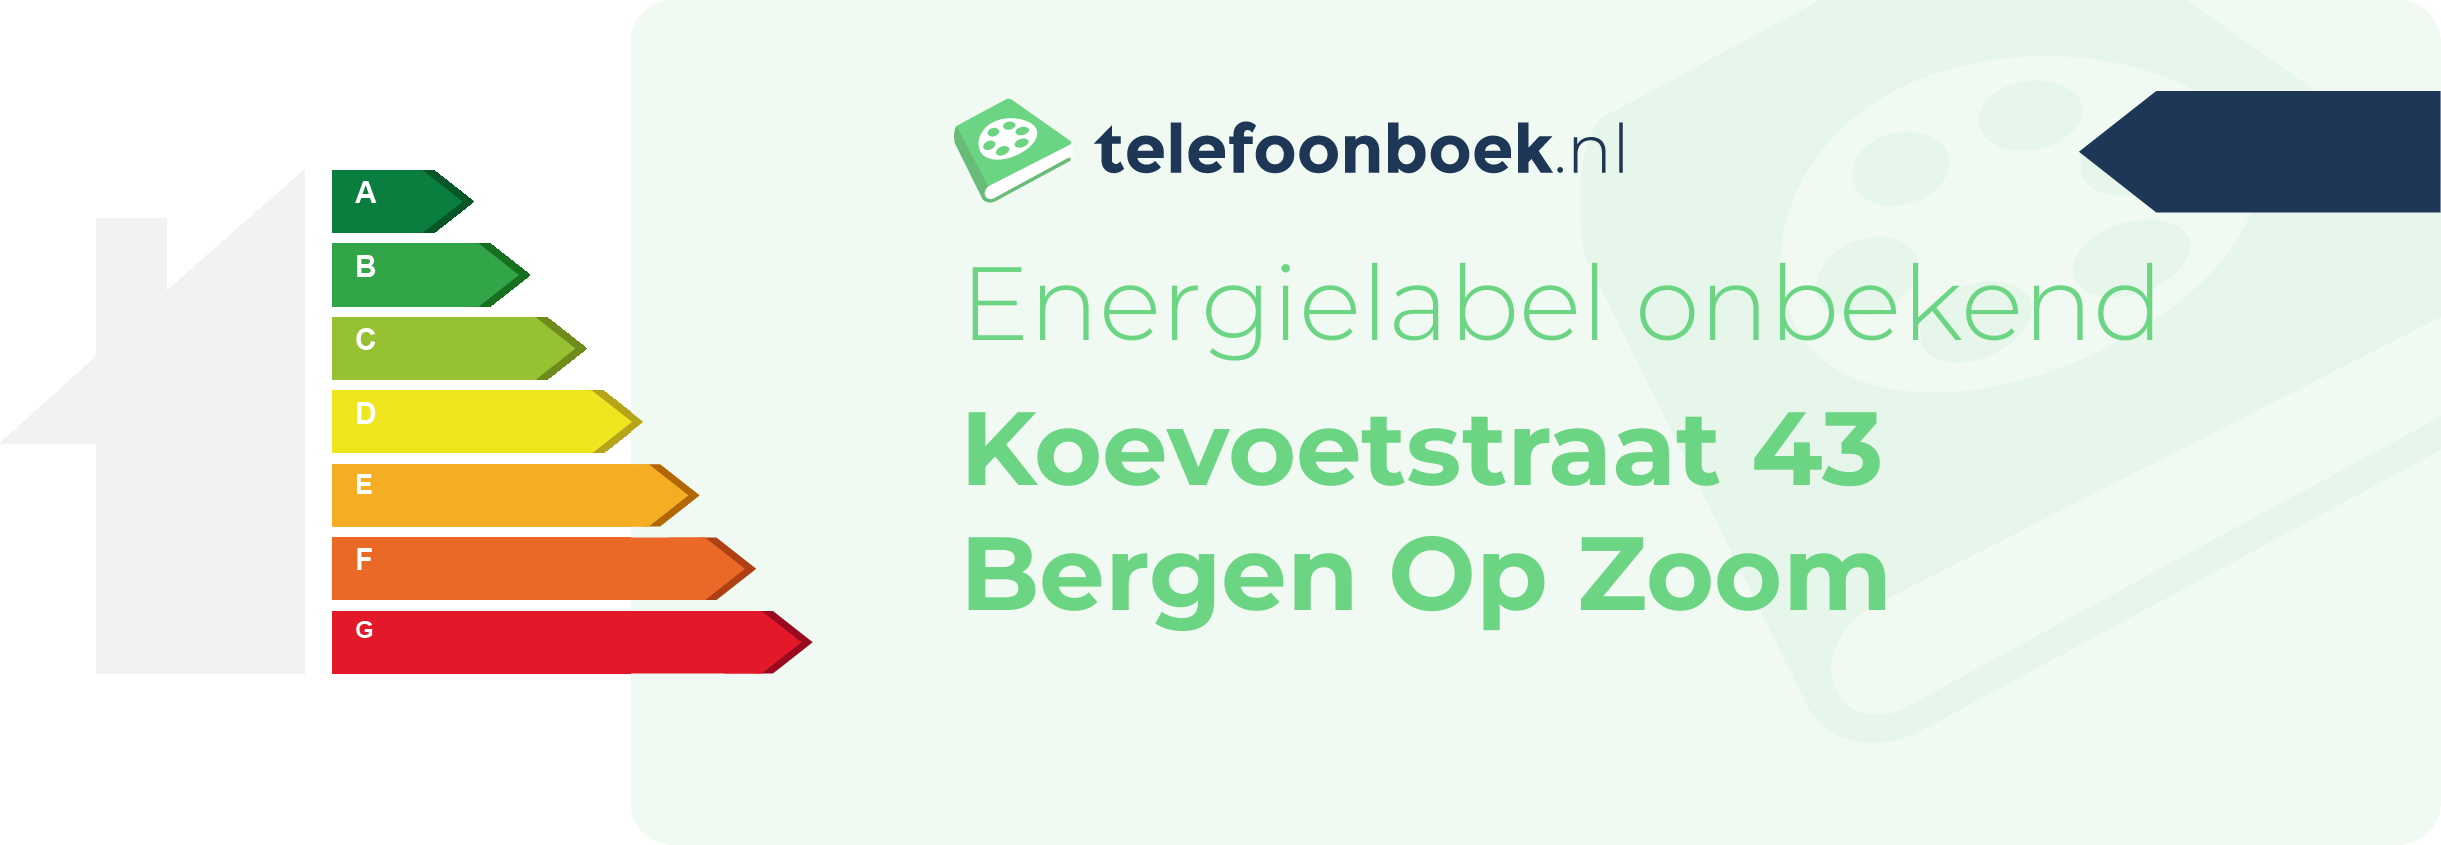 Energielabel Koevoetstraat 43 Bergen Op Zoom